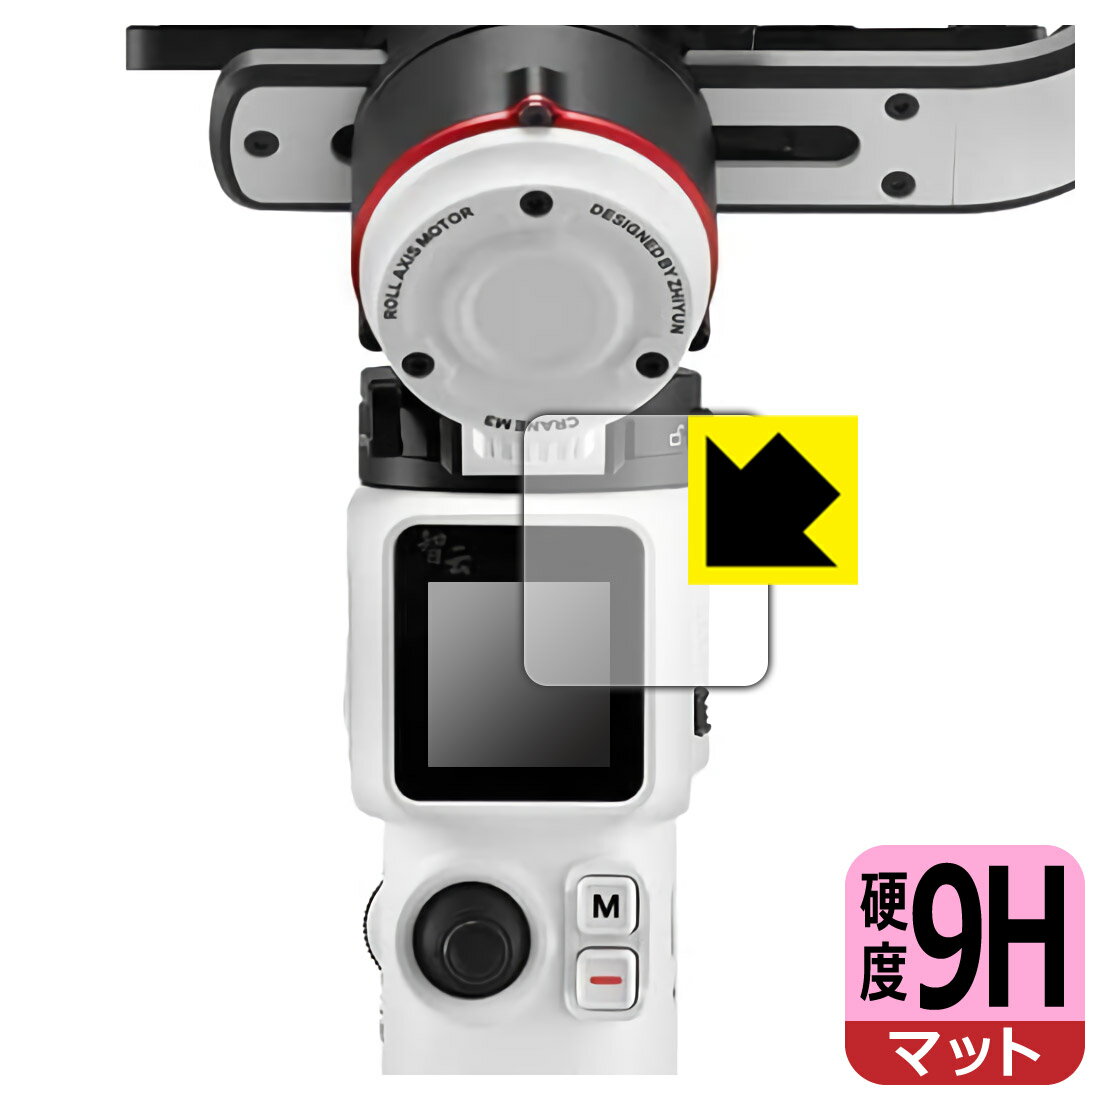 ●対応機種 : ZHIYUN CRANE M3 カメラ用ジンバル 液晶用の保護フィルムです。●内容量 : 1枚●柔軟性があり、ガラスフィルムのように衝撃を受けても割れない『9H高硬度【反射低減】保護フィルム』 ●安心の国産素材を使用。日本国内の自社工場で製造し出荷しています。【ポスト投函送料無料】商品は【ポスト投函発送 (追跡可能メール便)】で発送します。お急ぎ、配達日時を指定されたい方は以下のクーポンを同時購入ください。【お急ぎ便クーポン】　プラス110円(税込)で速達扱いでの発送。お届けはポストへの投函となります。【配達日時指定クーポン】　プラス550円(税込)で配達日時を指定し、宅配便で発送させていただきます。【お急ぎ便クーポン】はこちらをクリック【配達日時指定クーポン】はこちらをクリック 　 表面硬度はガラスフィルムと同等の9Hですが、しなやかな柔軟性がある「超ハードコートPETフィルム」なので衝撃を受けても割れません。厚みも一般的なガラスフィルムより薄い約0.2mmでタッチ操作の感度も良好です。(※1) 表面に微細な凹凸を作ることにより、外光を乱反射させギラツキを抑える「アンチグレア加工」がされております。 屋外での太陽光の映り込み、屋内でも蛍光灯などの映り込みが気になるシーンが多い方におすすめです。 また、指紋がついた場合でも目立ちにくいという特長があります。 反射防止のアンチグレア加工で指紋が目立ちにくい上、表面はフッ素コーティングがされており、皮脂や汚れがつきにくく、また、落ちやすくなっています。指滑りはさらさらな使用感です。 油性マジックのインクもはじきますので簡単に拭き取れます。 接着面は気泡の入りにくい特殊な自己吸着タイプです。素材に柔軟性があり、貼り付け作業も簡単にできます。また、はがすときにガラス製フィルムのように割れてしまうことはありません。 貼り直しが何度でもできるので、正しい位置へ貼り付けられるまでやり直すことができます。 最高級グレードの国産素材を日本国内の弊社工場で加工している完全な Made in Japan です。安心の品質をお届けします。 ※1「表面硬度 9H」の表示は素材として使用しているフィルムの性能です。機器に貼り付けた状態の測定結果ではありません。 使用上の注意 ●本製品は機器の画面をキズなどから保護するフィルムです。他の目的にはご使用にならないでください。 ●本製品は液晶保護および機器本体を完全に保護することを保証するものではありません。機器の破損、損傷、故障、その他損害につきましては一切の責任を負いかねます。 ●製品の性質上、画面操作の反応が変化したり、表示等が変化して見える場合がございます。 ●貼り付け作業時の失敗(位置ズレ、汚れ、ゆがみ、折れ、気泡など)および取り外し作業時の破損、損傷などについては、一切の責任を負いかねます。 ●水に濡れた状態でのご使用は吸着力の低下などにより、保護フィルムがはがれてしまう場合がございます。防水対応の機器でご使用の場合はご注意ください。 ●アルコール類やその他薬剤を本製品に付着させないでください。表面のコーティングや吸着面が変質するおそれがあります。 ●品質向上のため、仕様などを予告なく変更する場合がございますので、予めご了承ください。